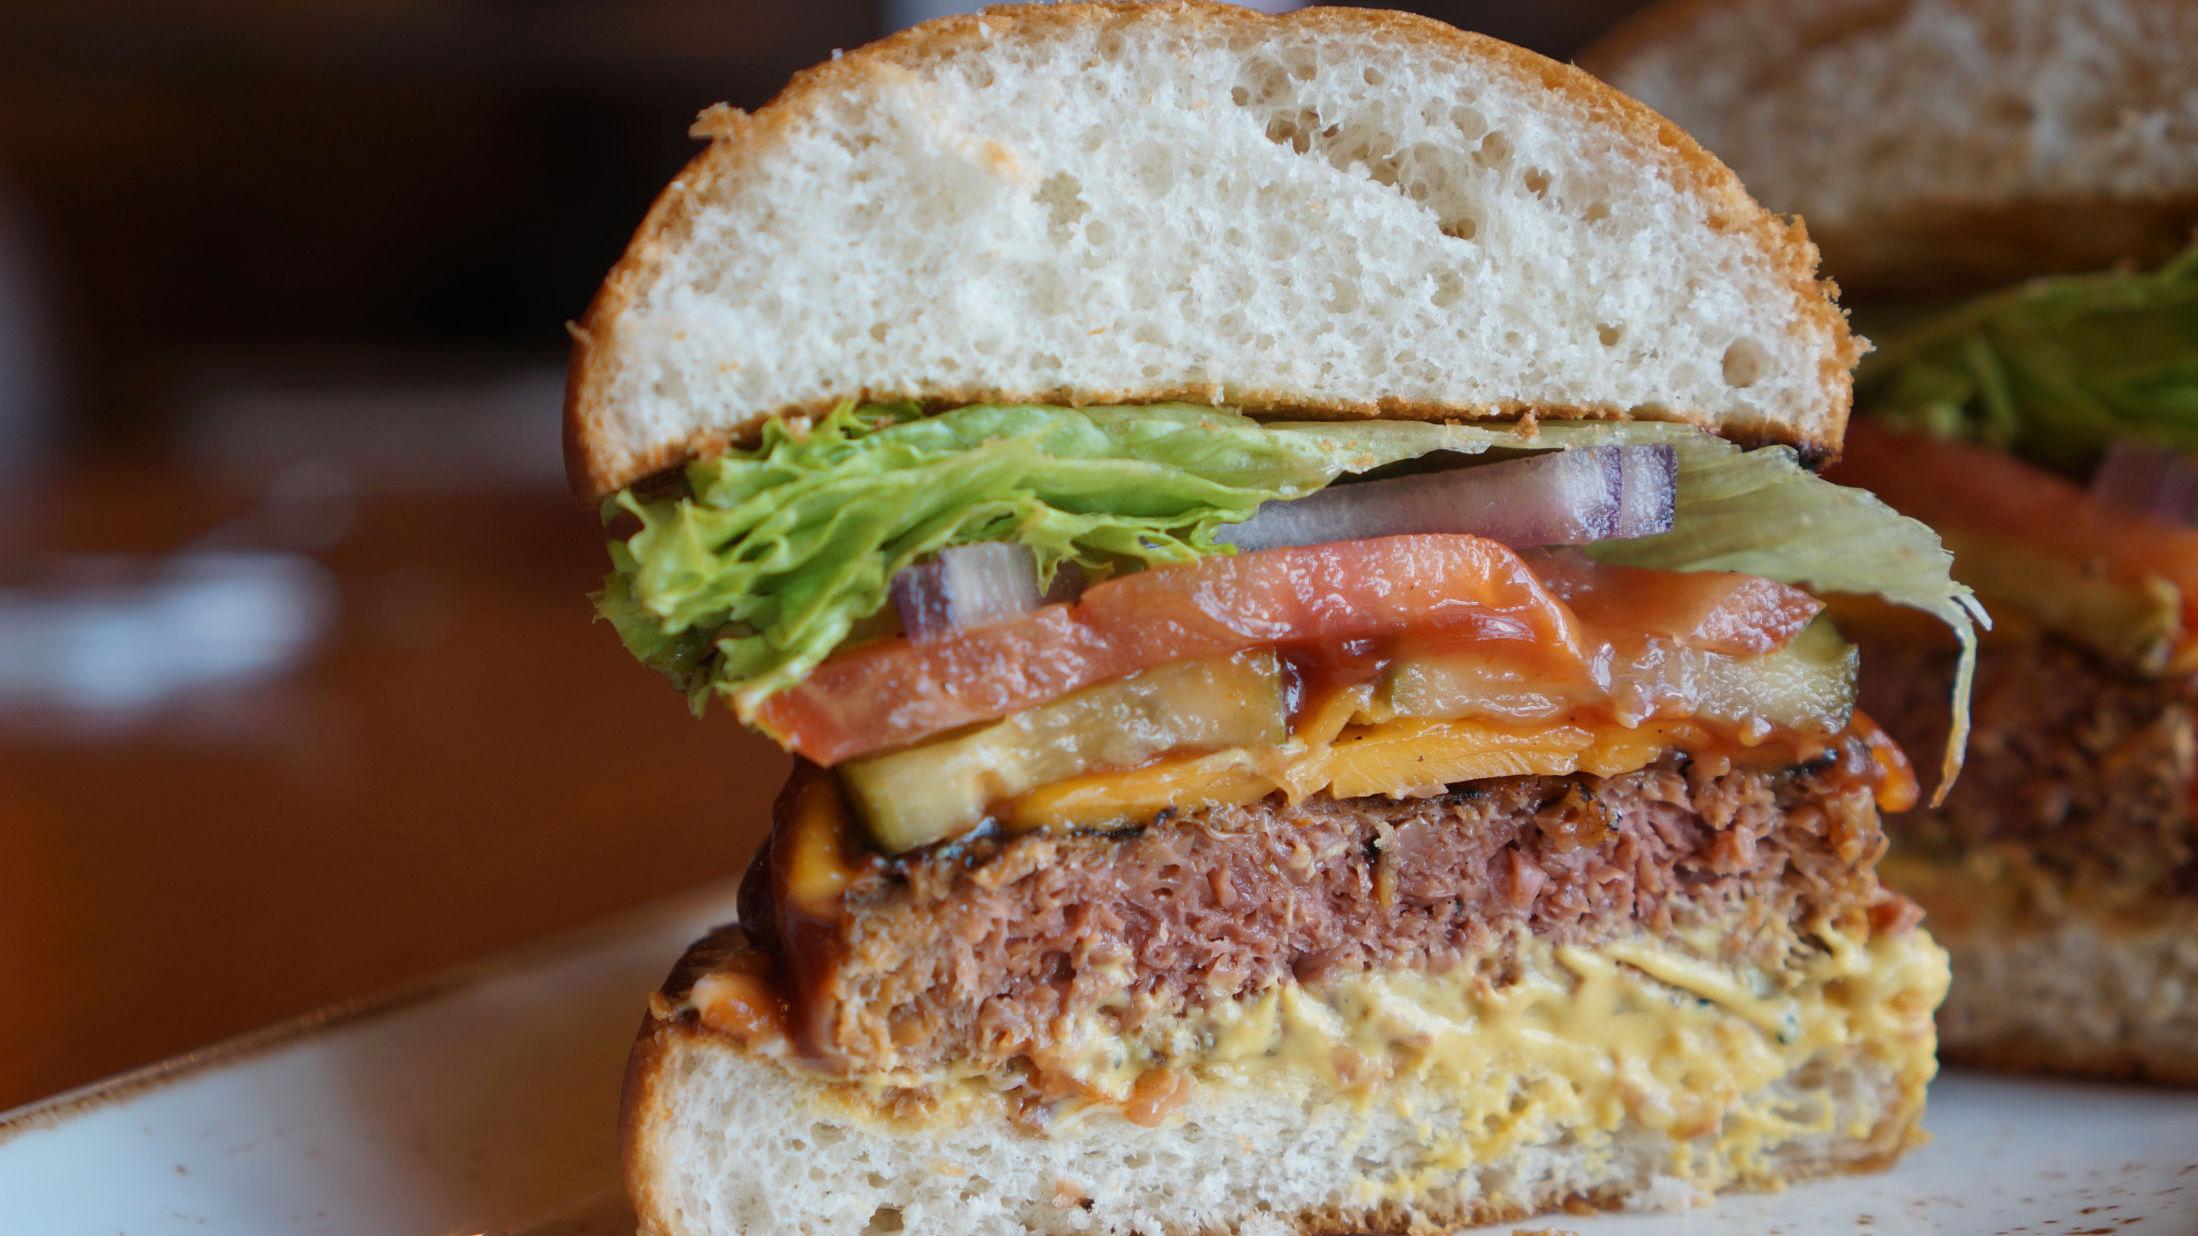 VEGANSK: Nei, dette er ikke kjøtt - men en plantebasert burger laget av blant annet erteprotein. Resten av burgeren er for øvrig også vegansk - inkludert en spesiell type cheddar, «veganaise» og salsa. Foto: Maria Tveiten Helgeby/VG